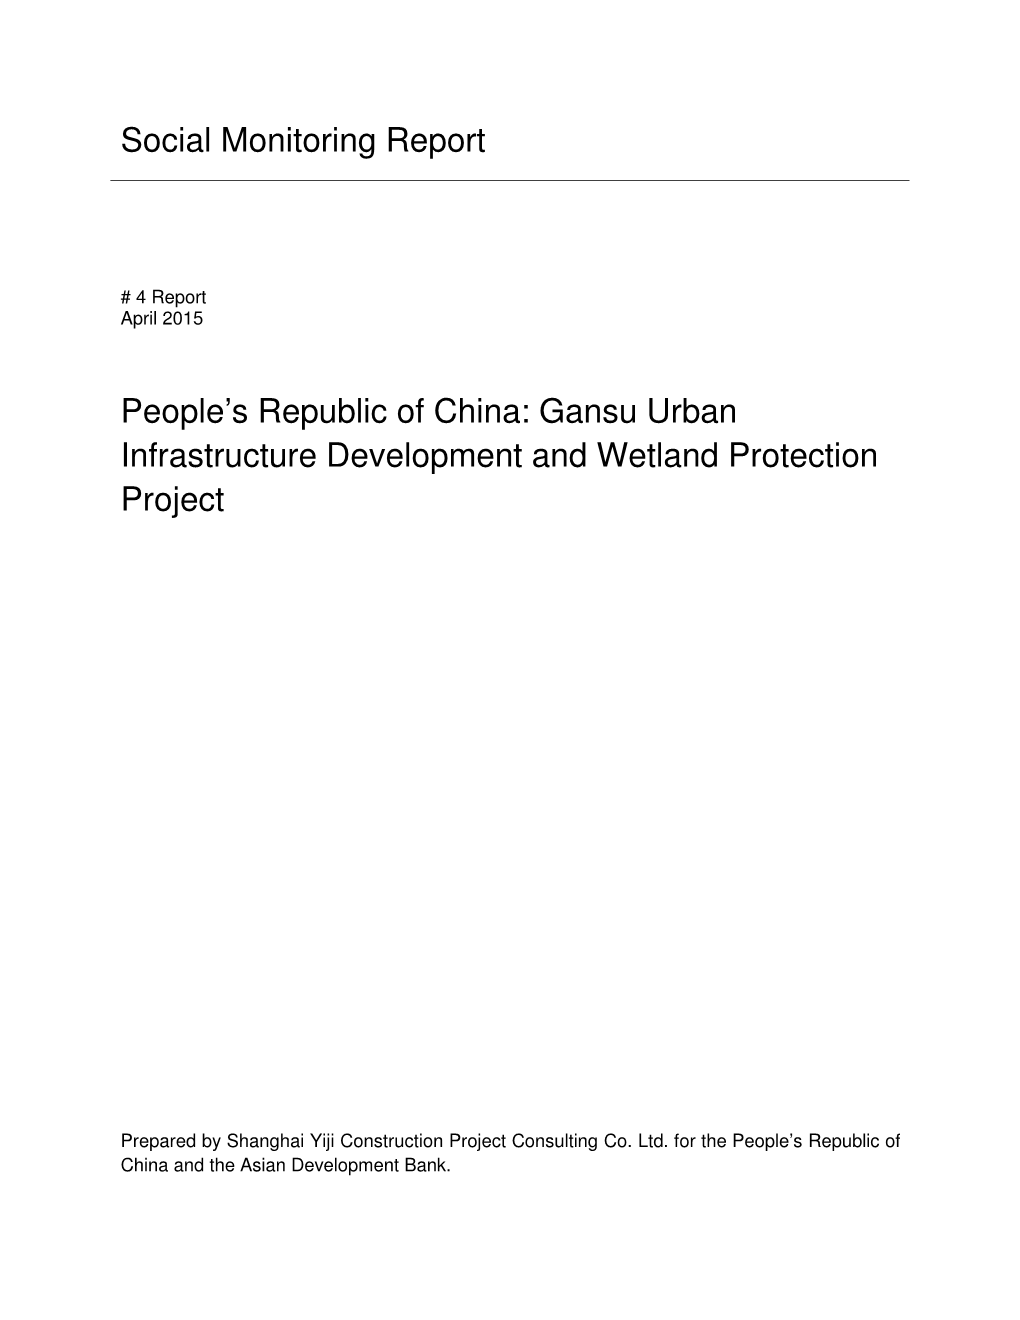 44020-013: Gansu Urban Infrastructure Development and Wetland